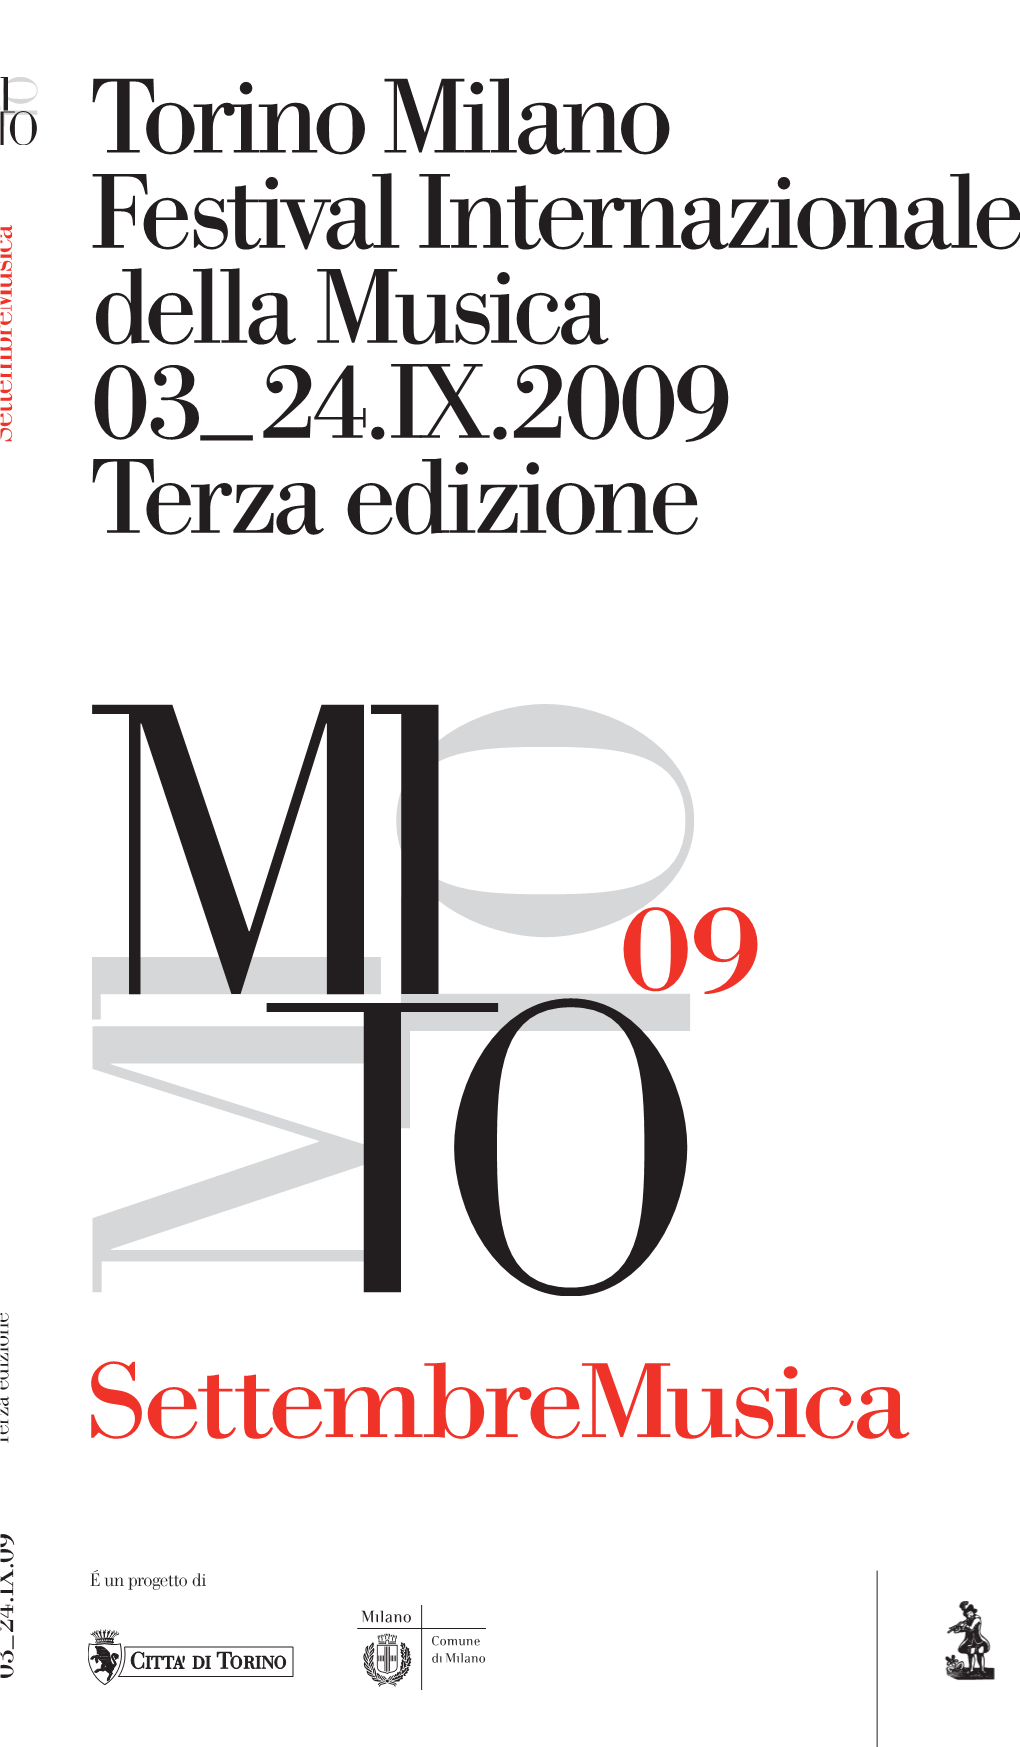 Settembremusica Torinomilano Festivalinternazionale Della Musica 03 24.IX.2009 Terza Edizione